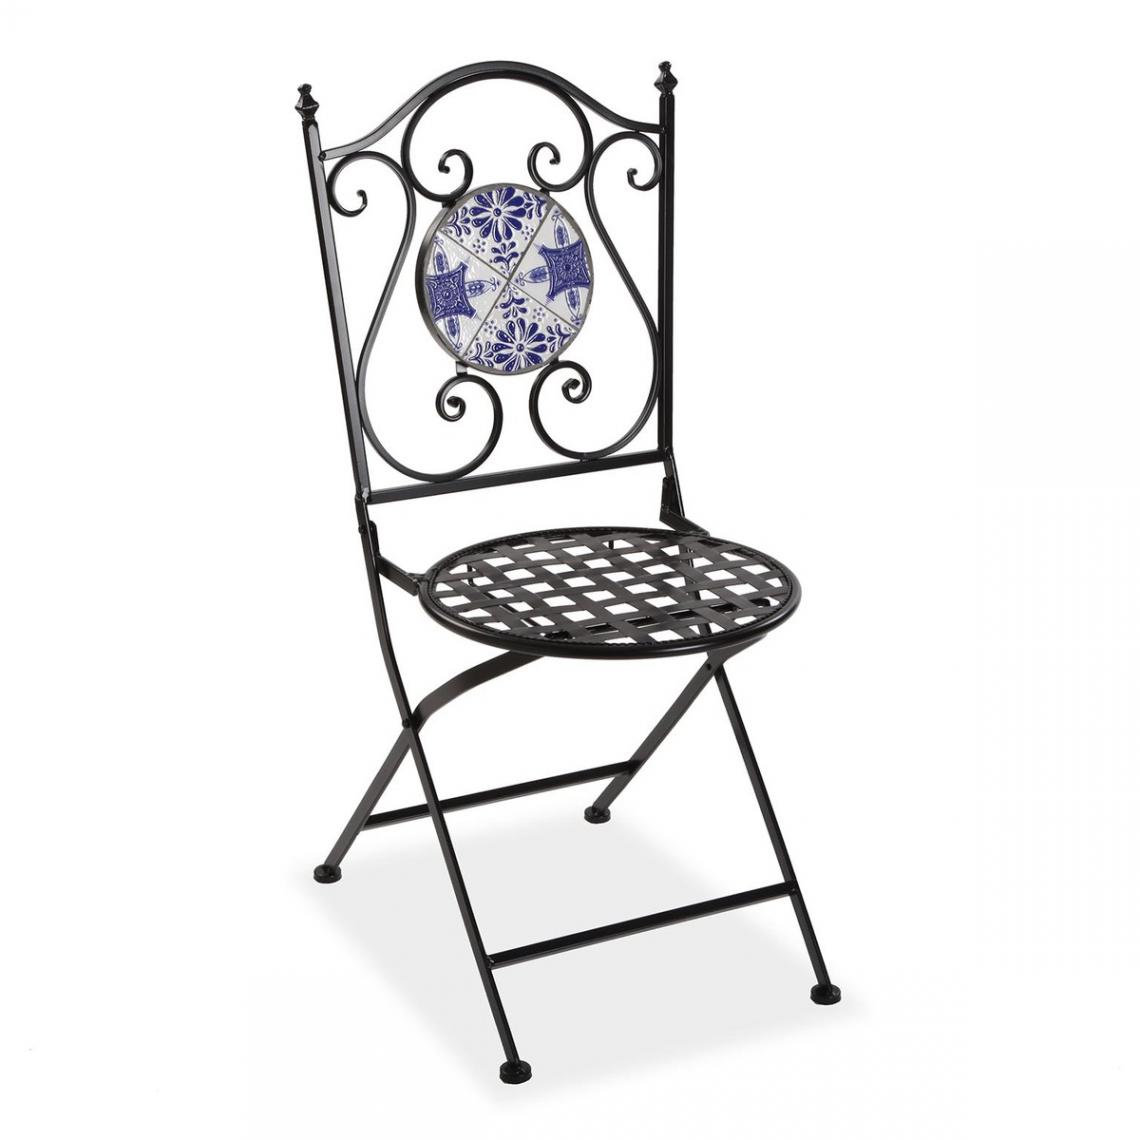 3S. x Home - Chaise De Jardin GREEK Bleu - Chaises de jardin